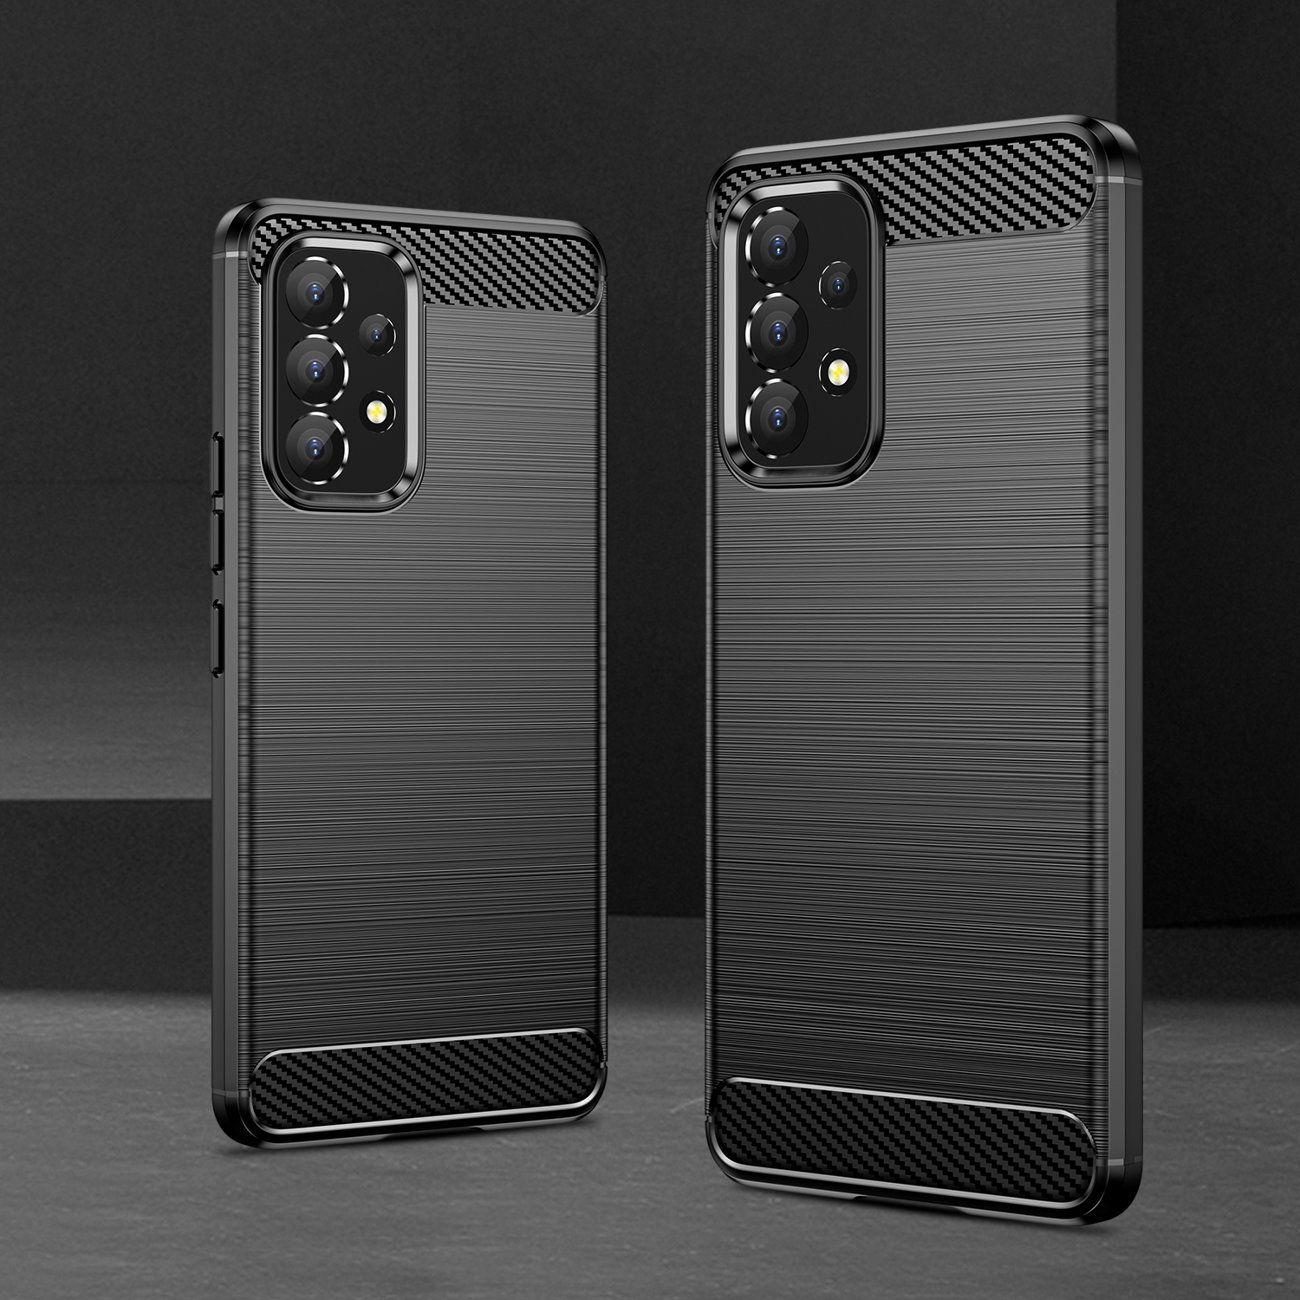 Case Carbon Samsung Galaxy A20e black